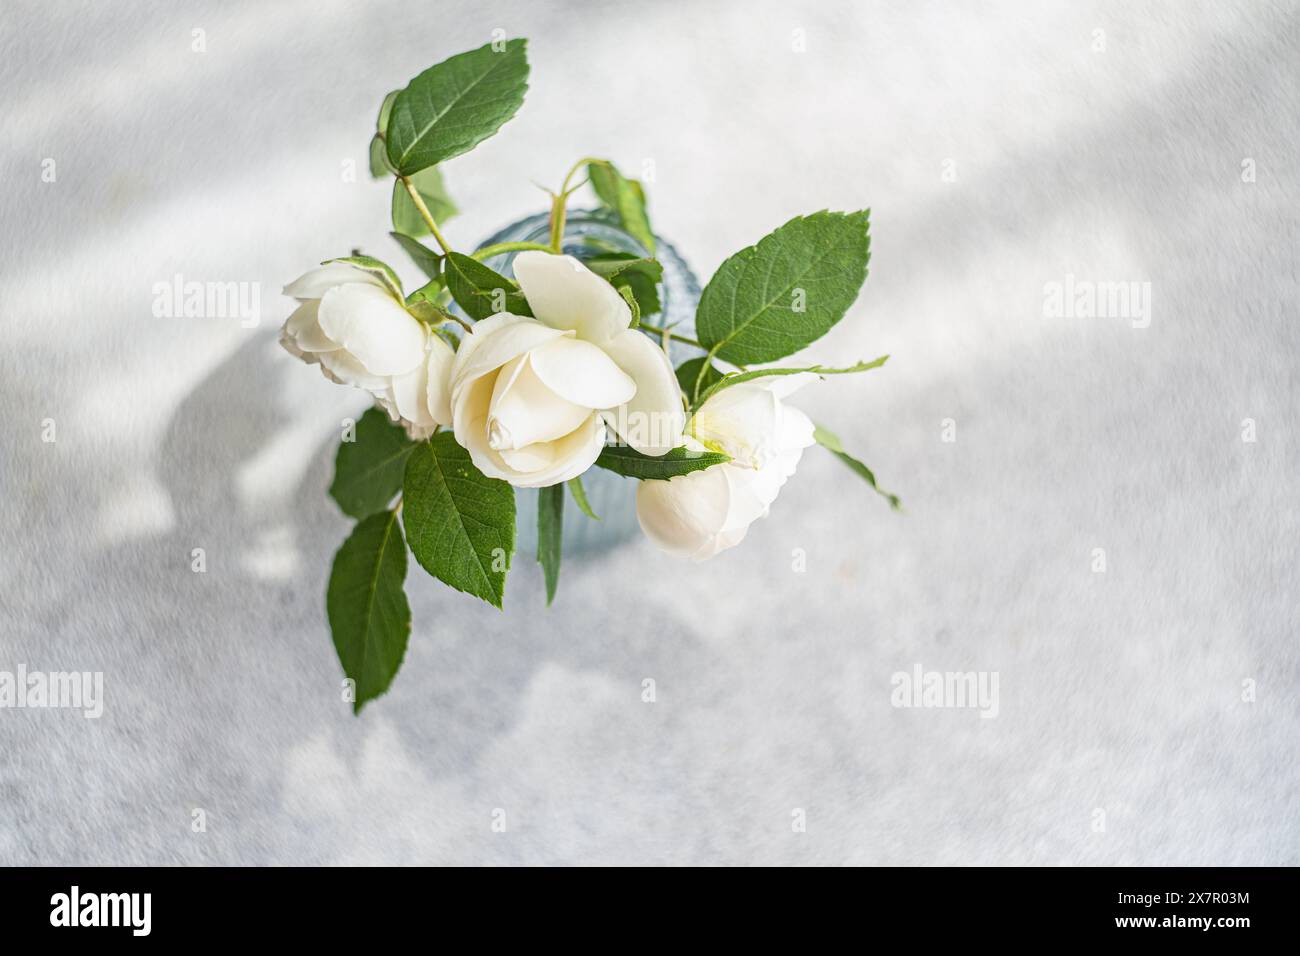 Vue aérienne de belles roses blanches dans un vase en verre bleu, placé sur une surface blanche texturée, capturant un sentiment de pureté et de tranquillité Banque D'Images